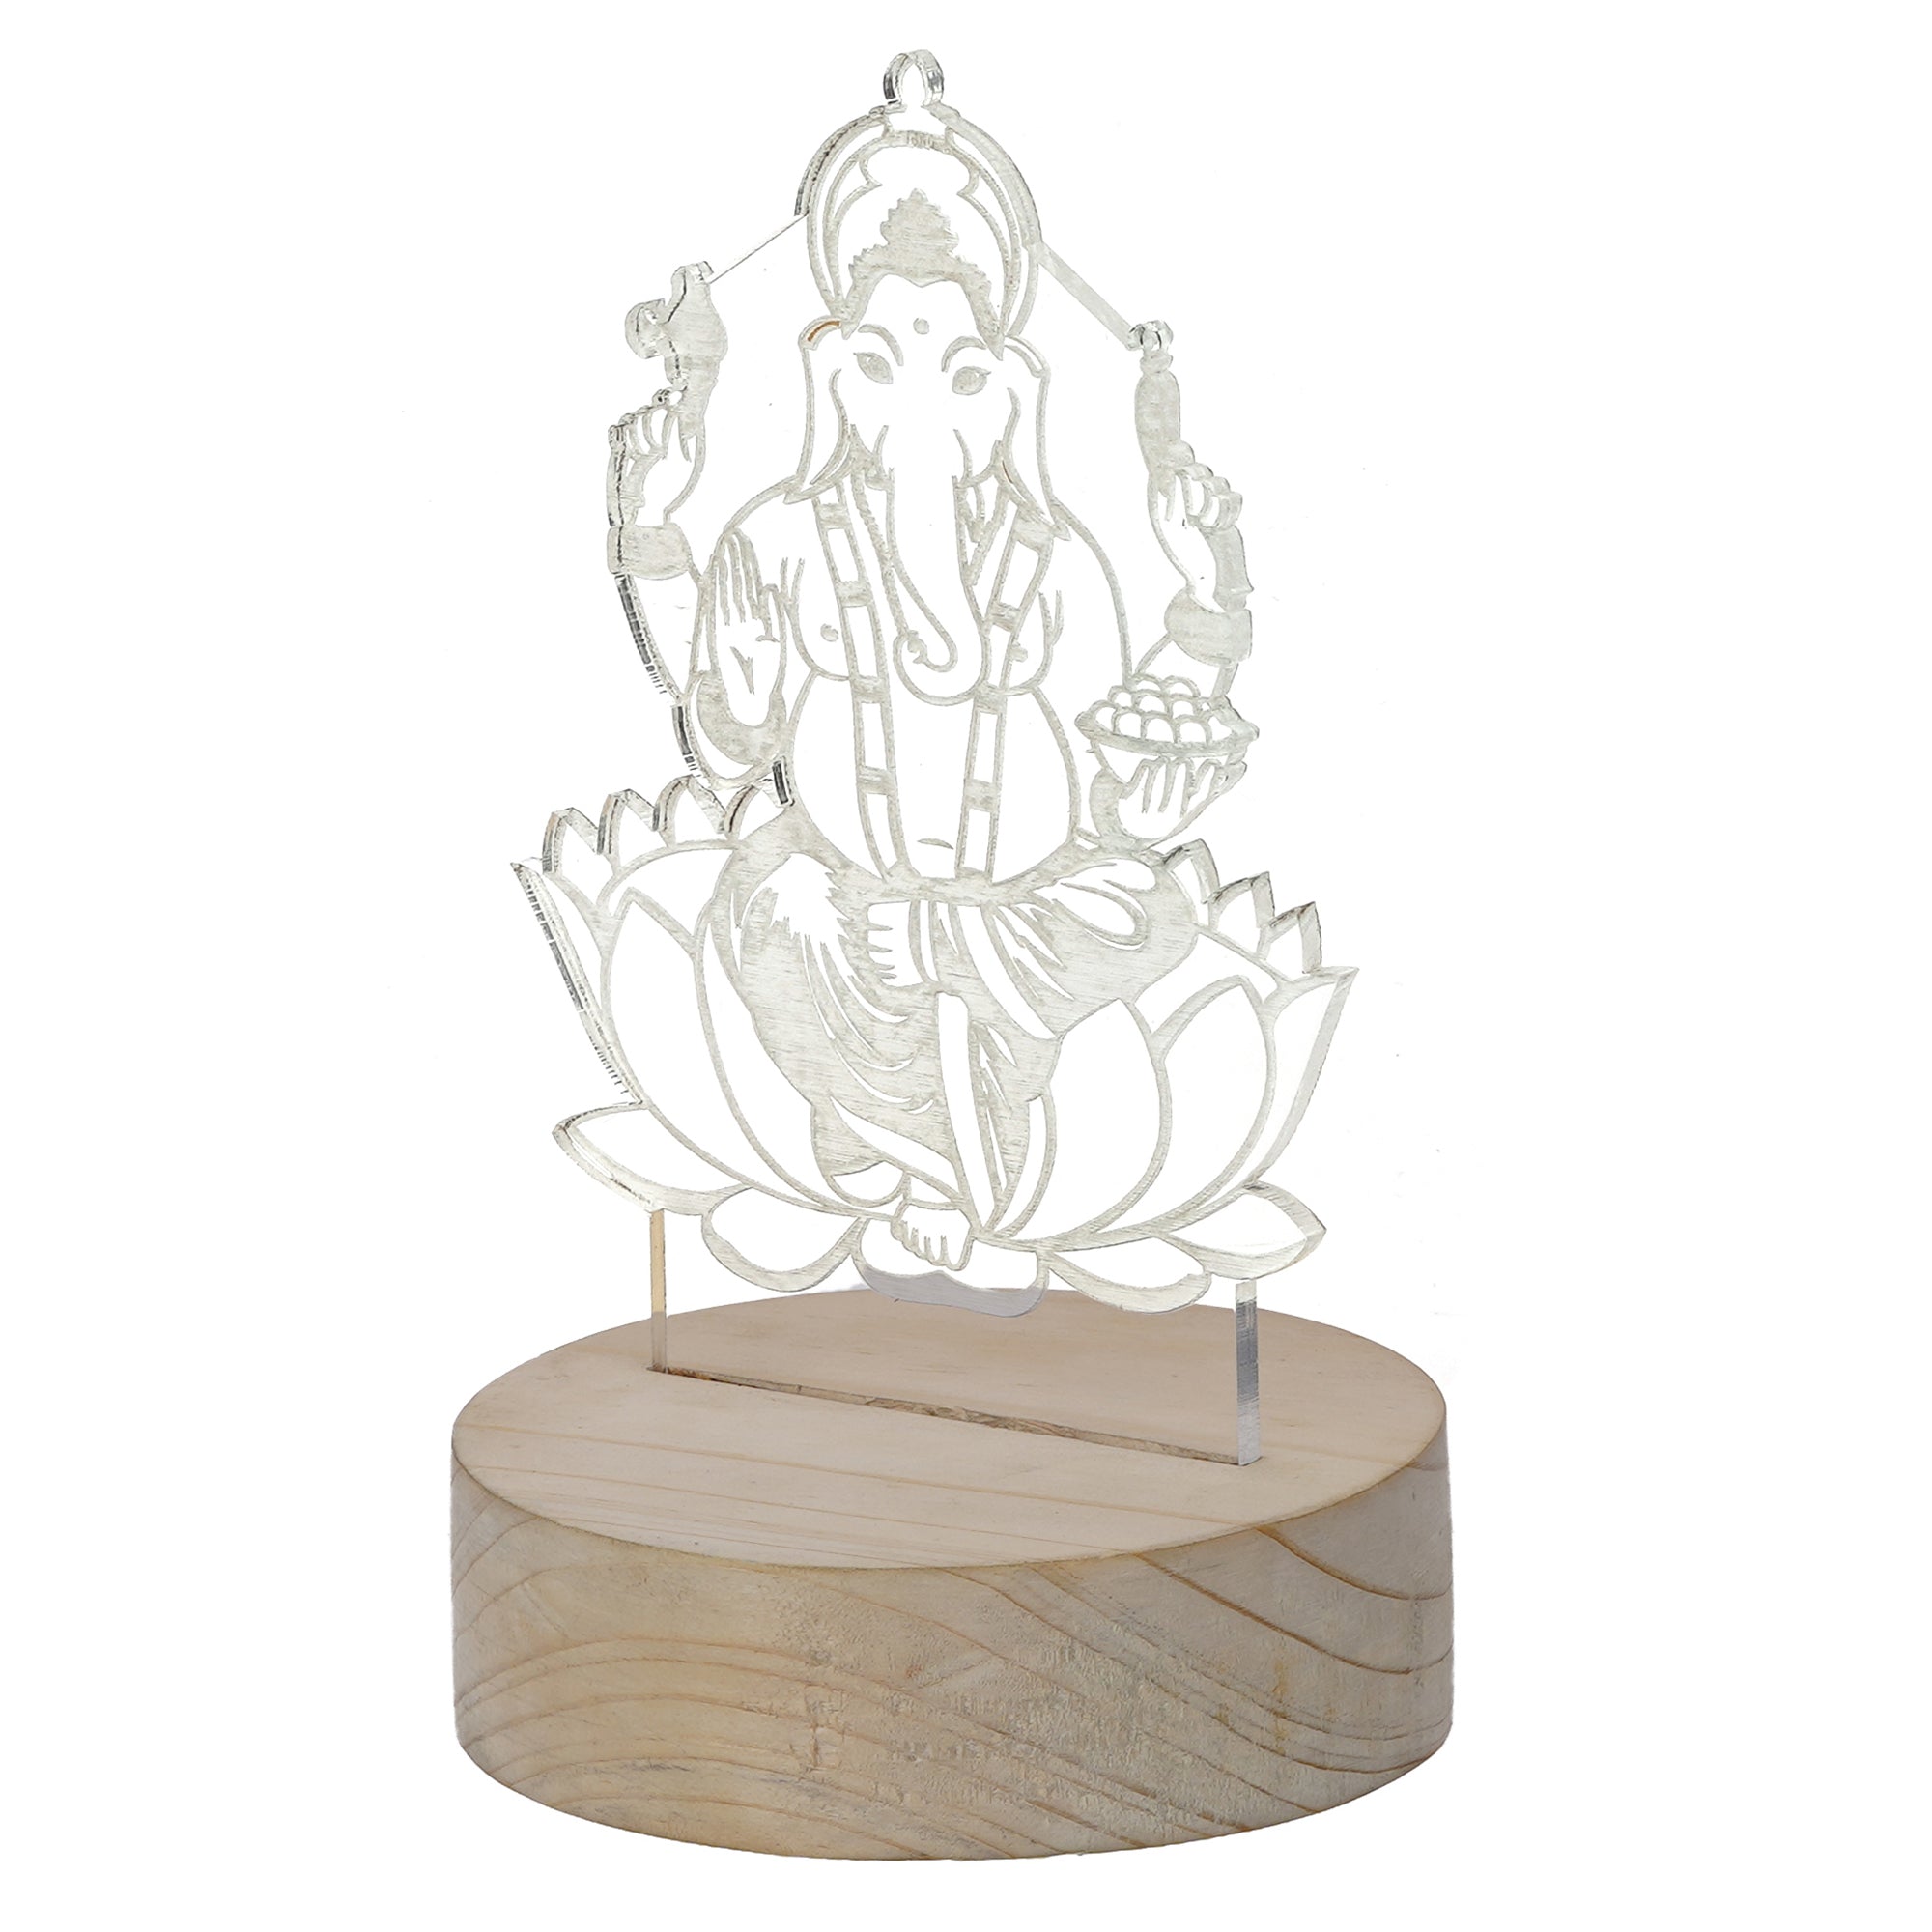 Lord Ganesha Design Carved on Acrylic & Wood Base Night Lamp 5